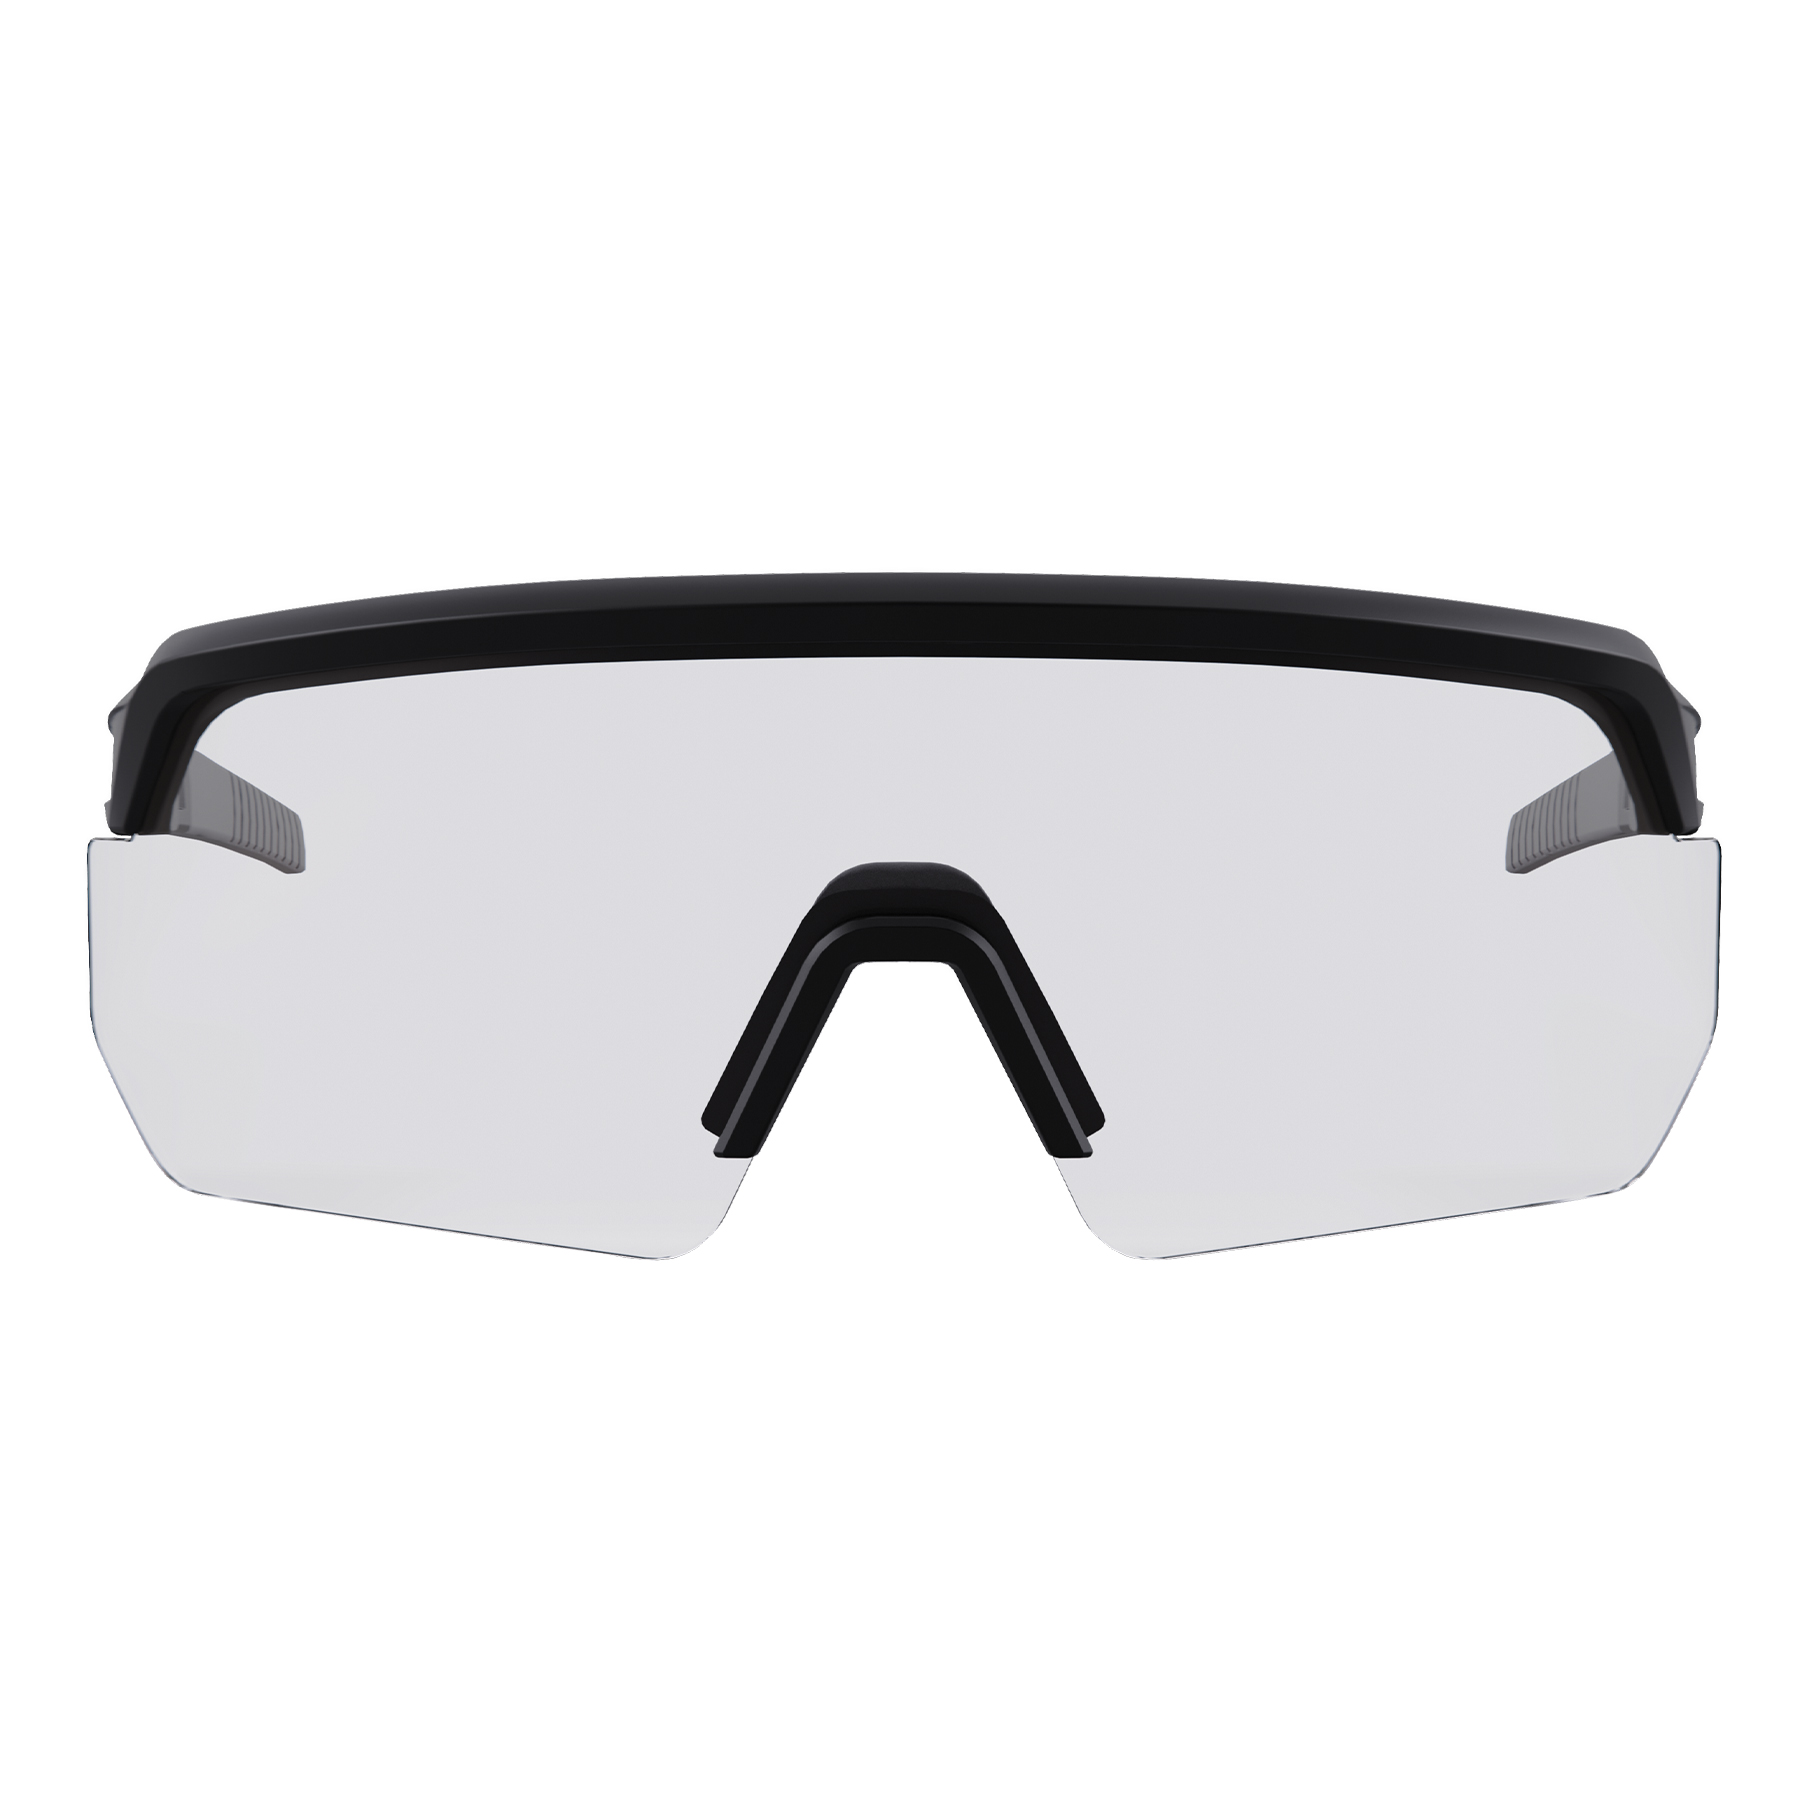 Ergodyne Skullerz AEGIR Anti-Scratch and Enhanced Anti-Fog Sun Safety Glasses from GME Supply